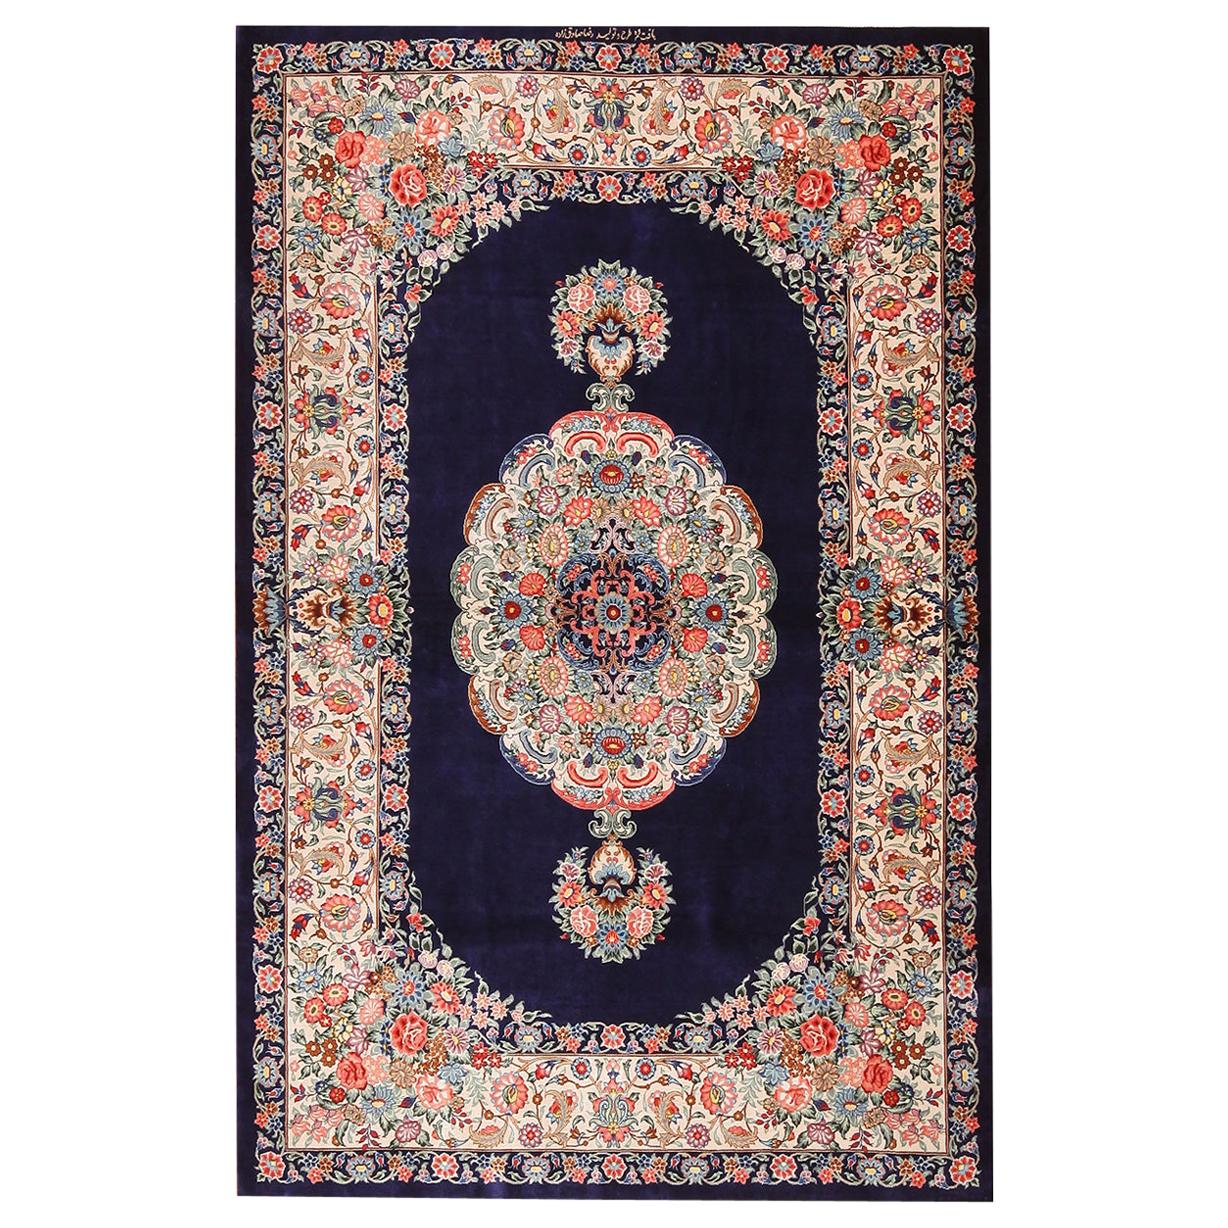 Vintage Persian Silk Qum Rug. 3 ft 4 in x 5 ft 2 in